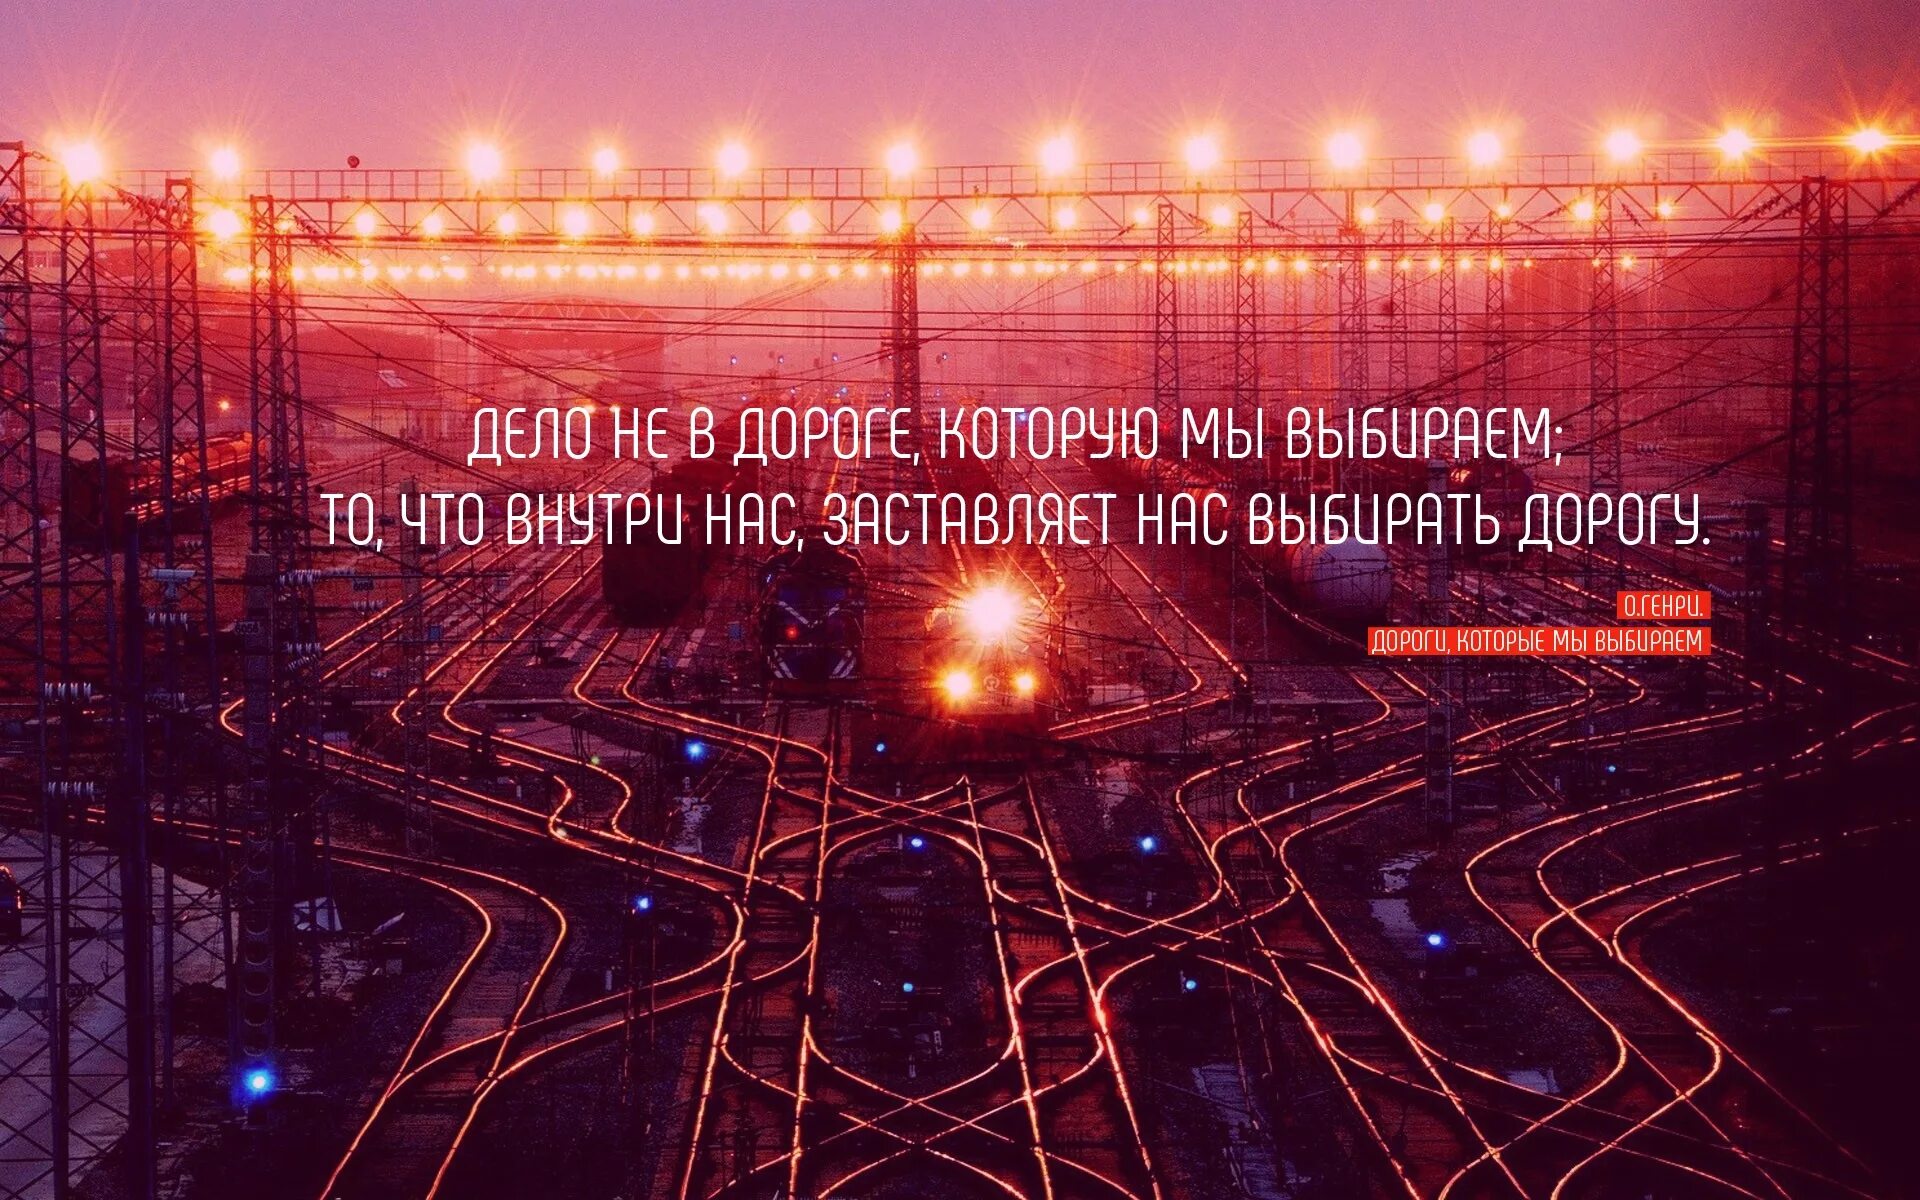 Цитаты про дорогу. Цитаты про железную дорогу. Красивые фразы про железную дорогу. Красивые фразы про дорогу. Дорогу крылатому